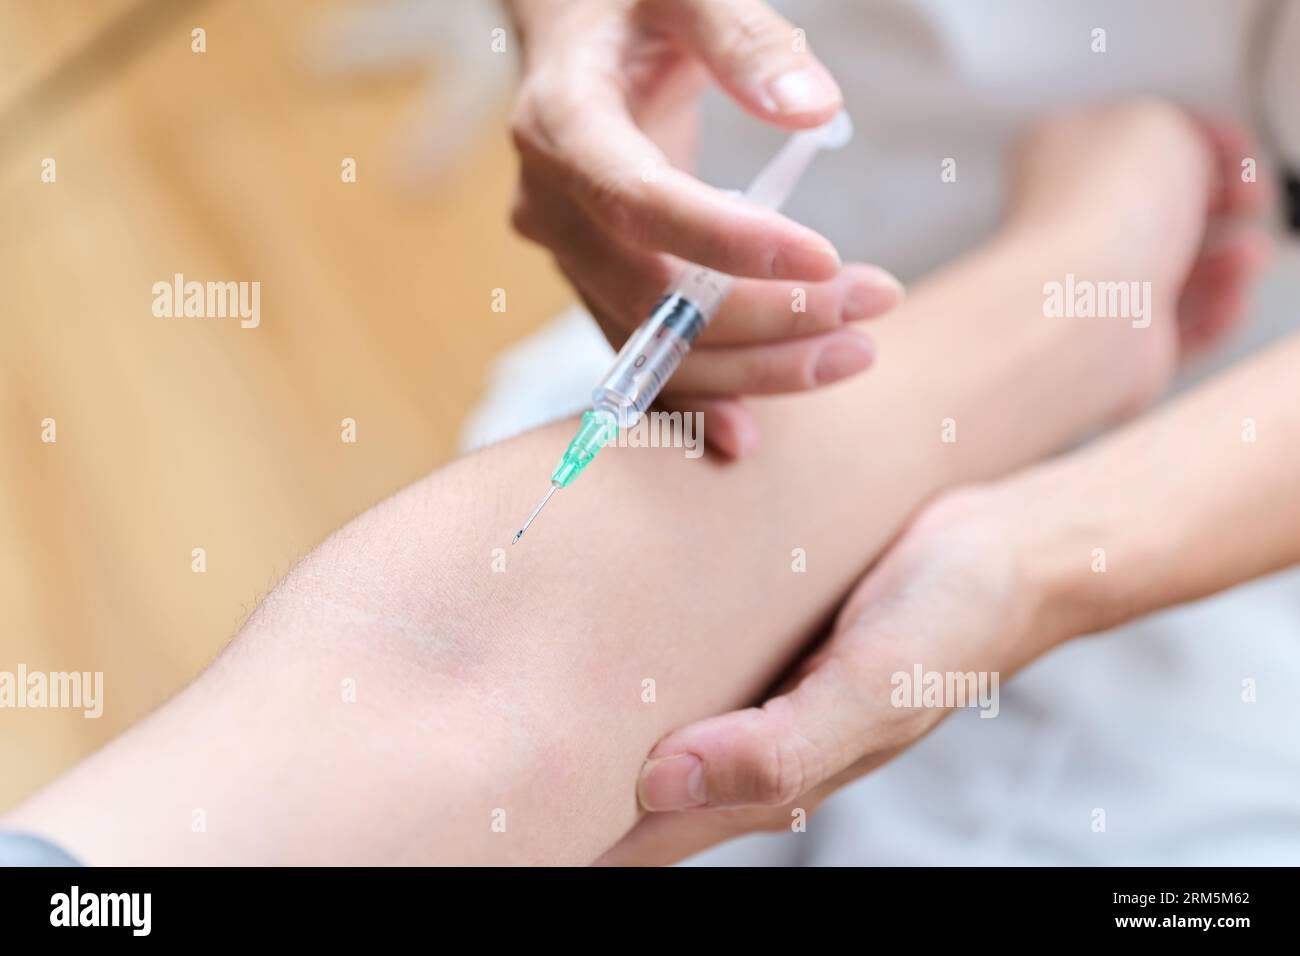 Asiatischer Arzt, der eine Injektion in seinen Arm macht Stockfoto